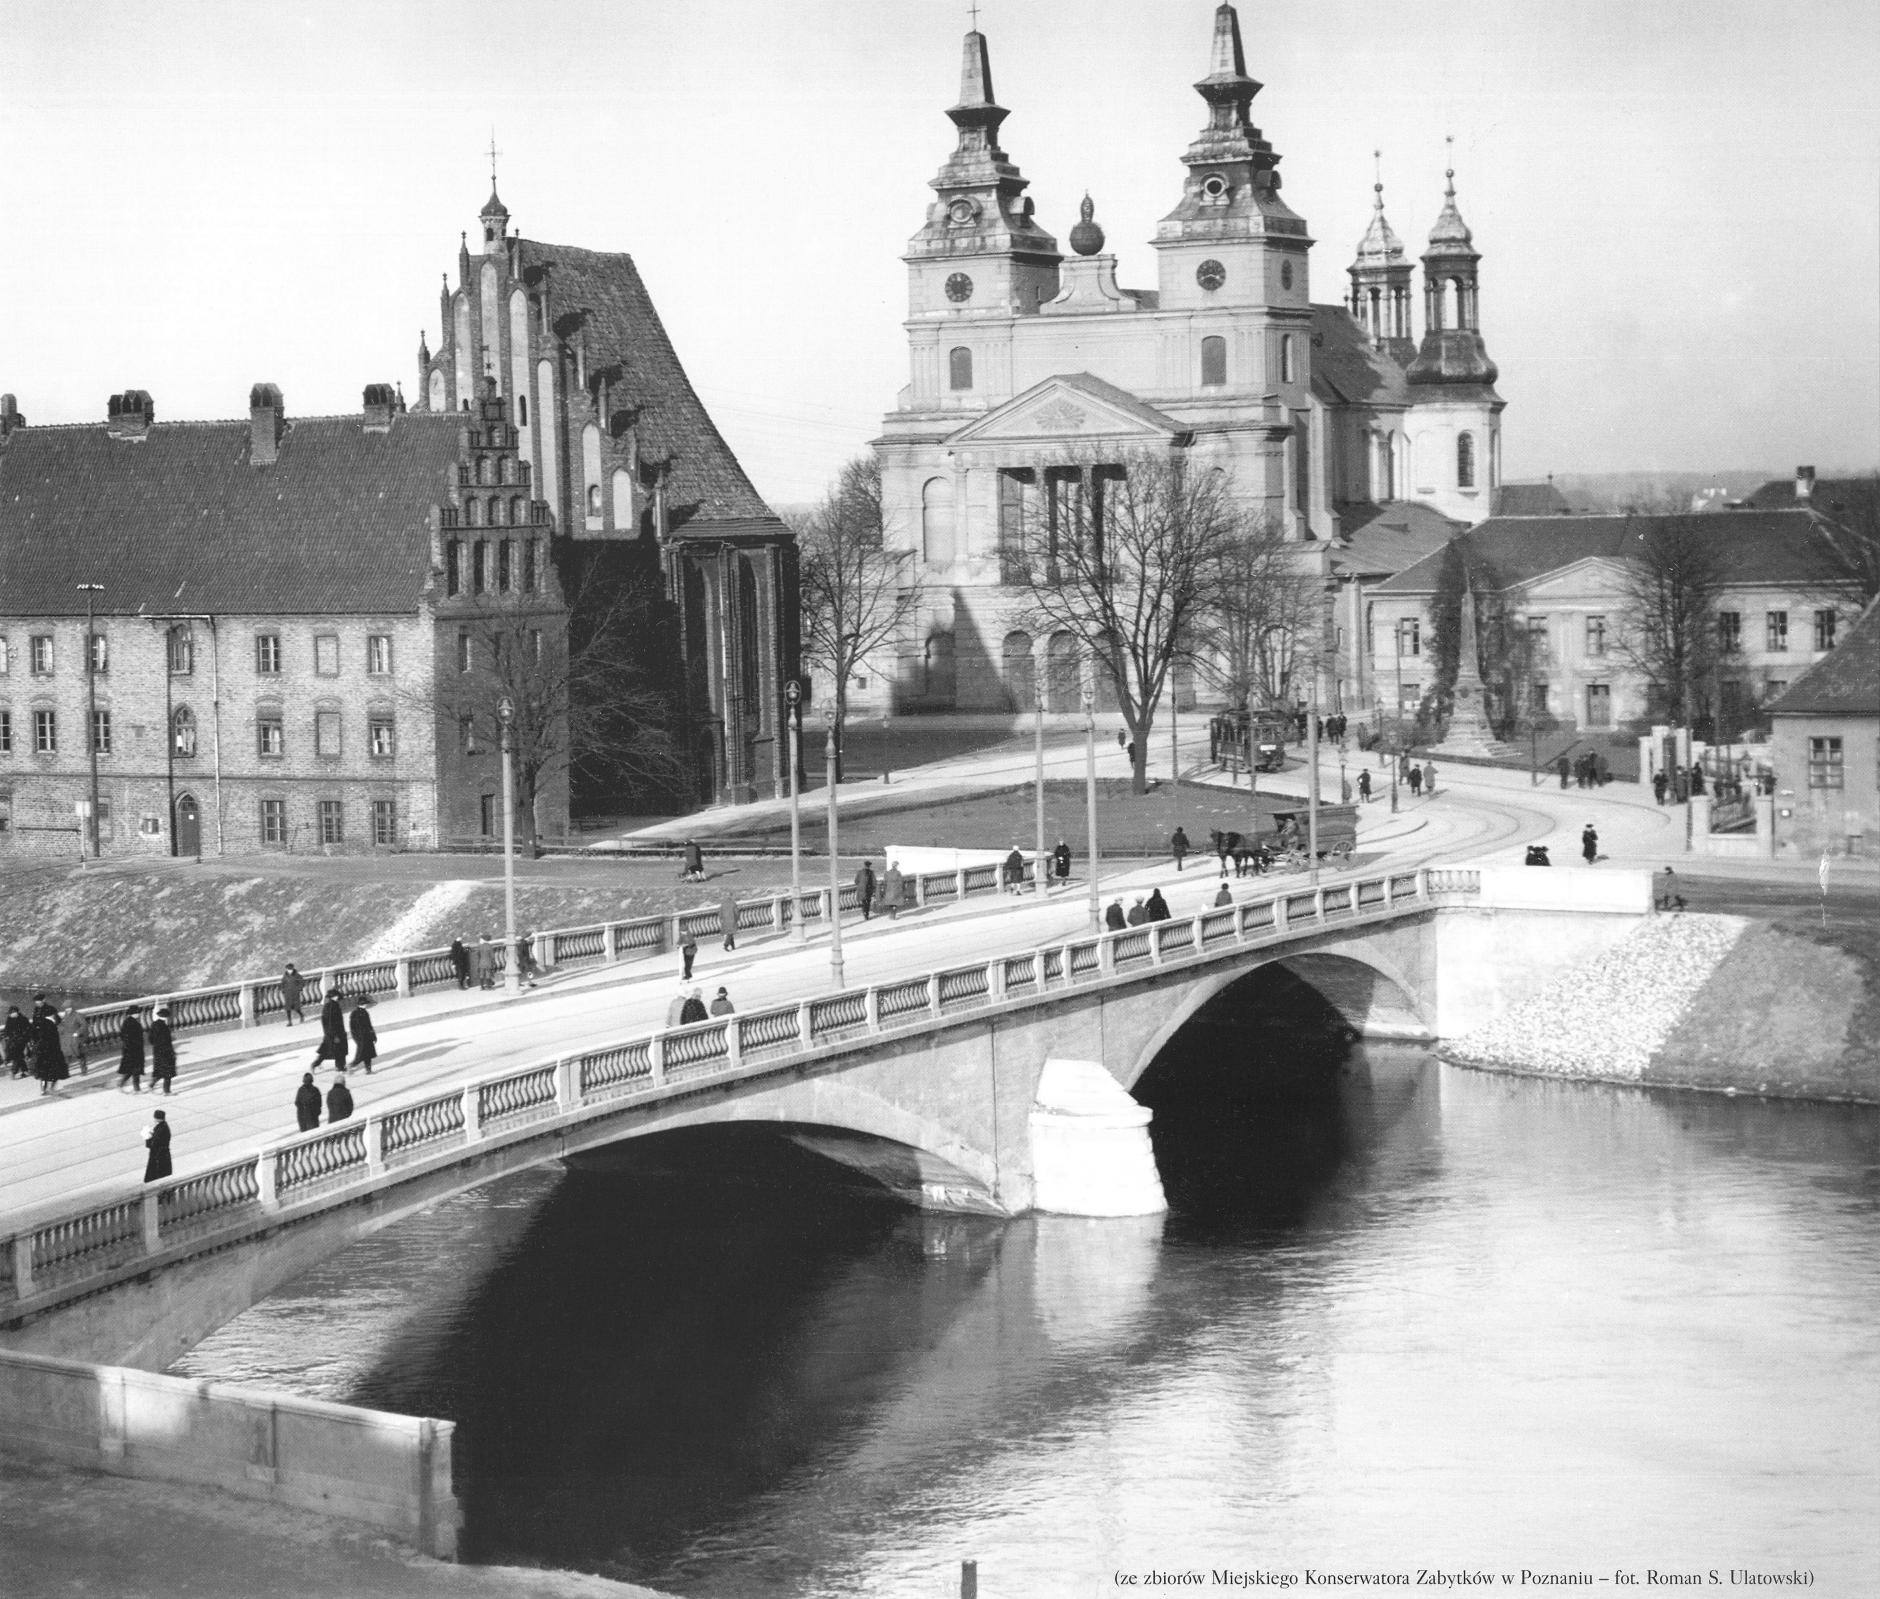 (1938) Ostrów Tumski. Most Chrobrego, Psałteria, Kościół Najświętszej Marii Panny oraz Katedra.